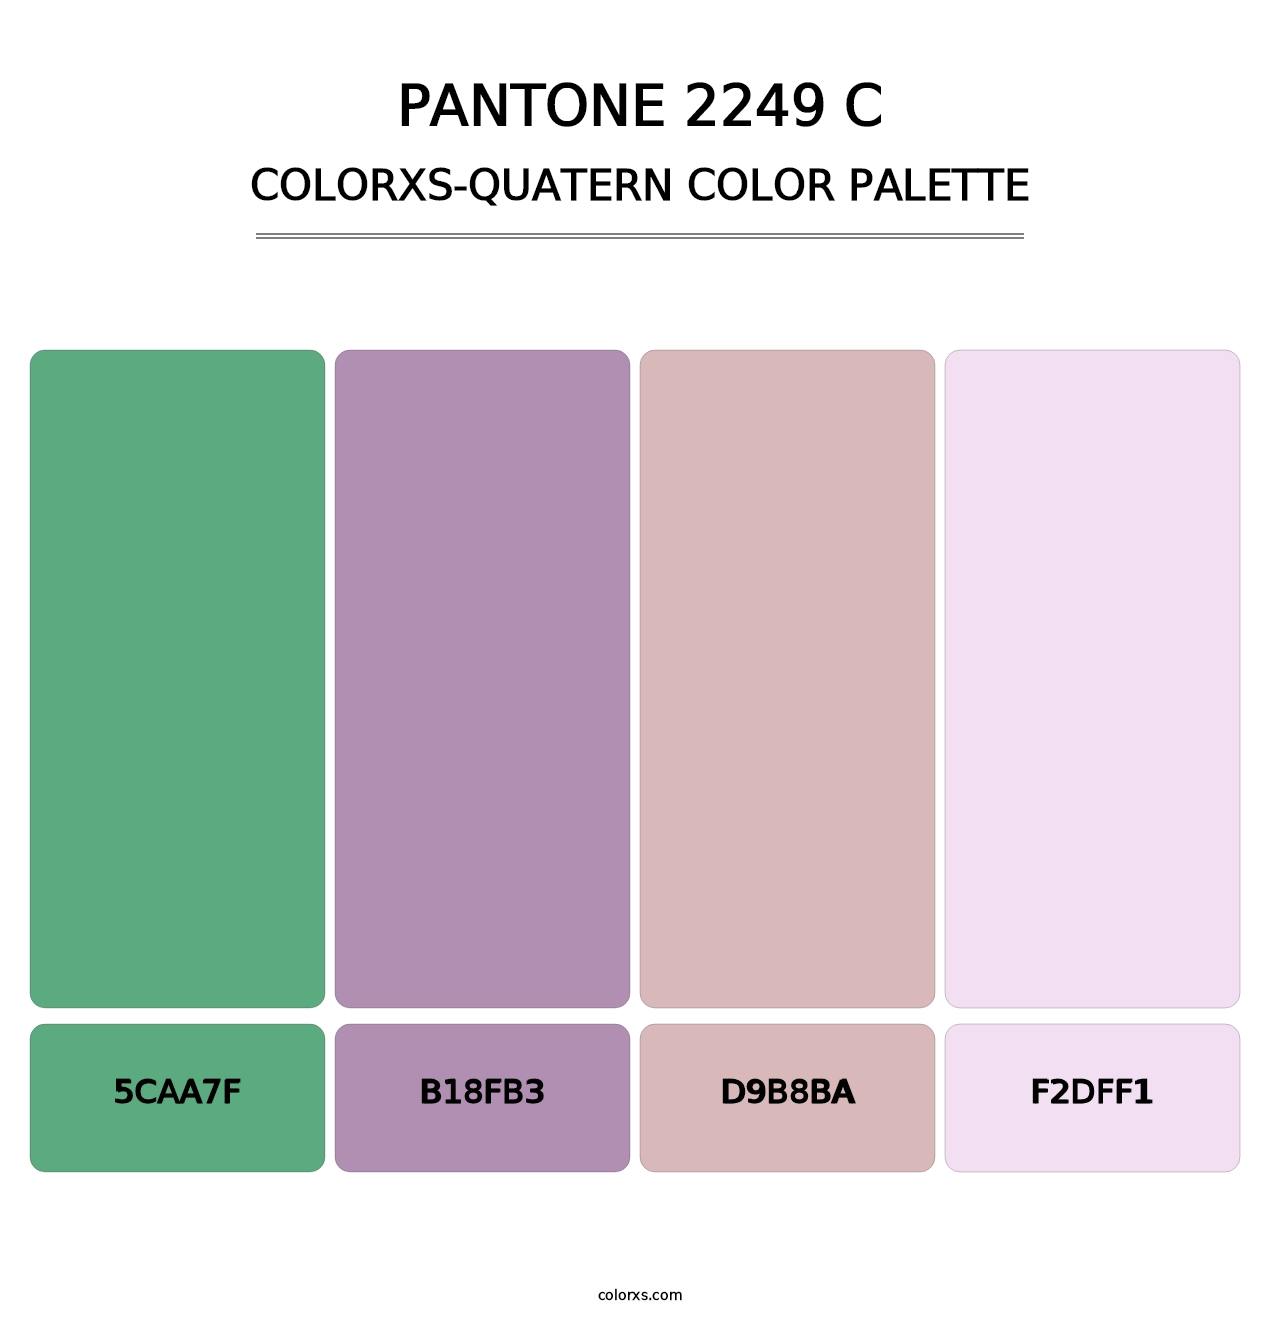 PANTONE 2249 C - Colorxs Quatern Palette